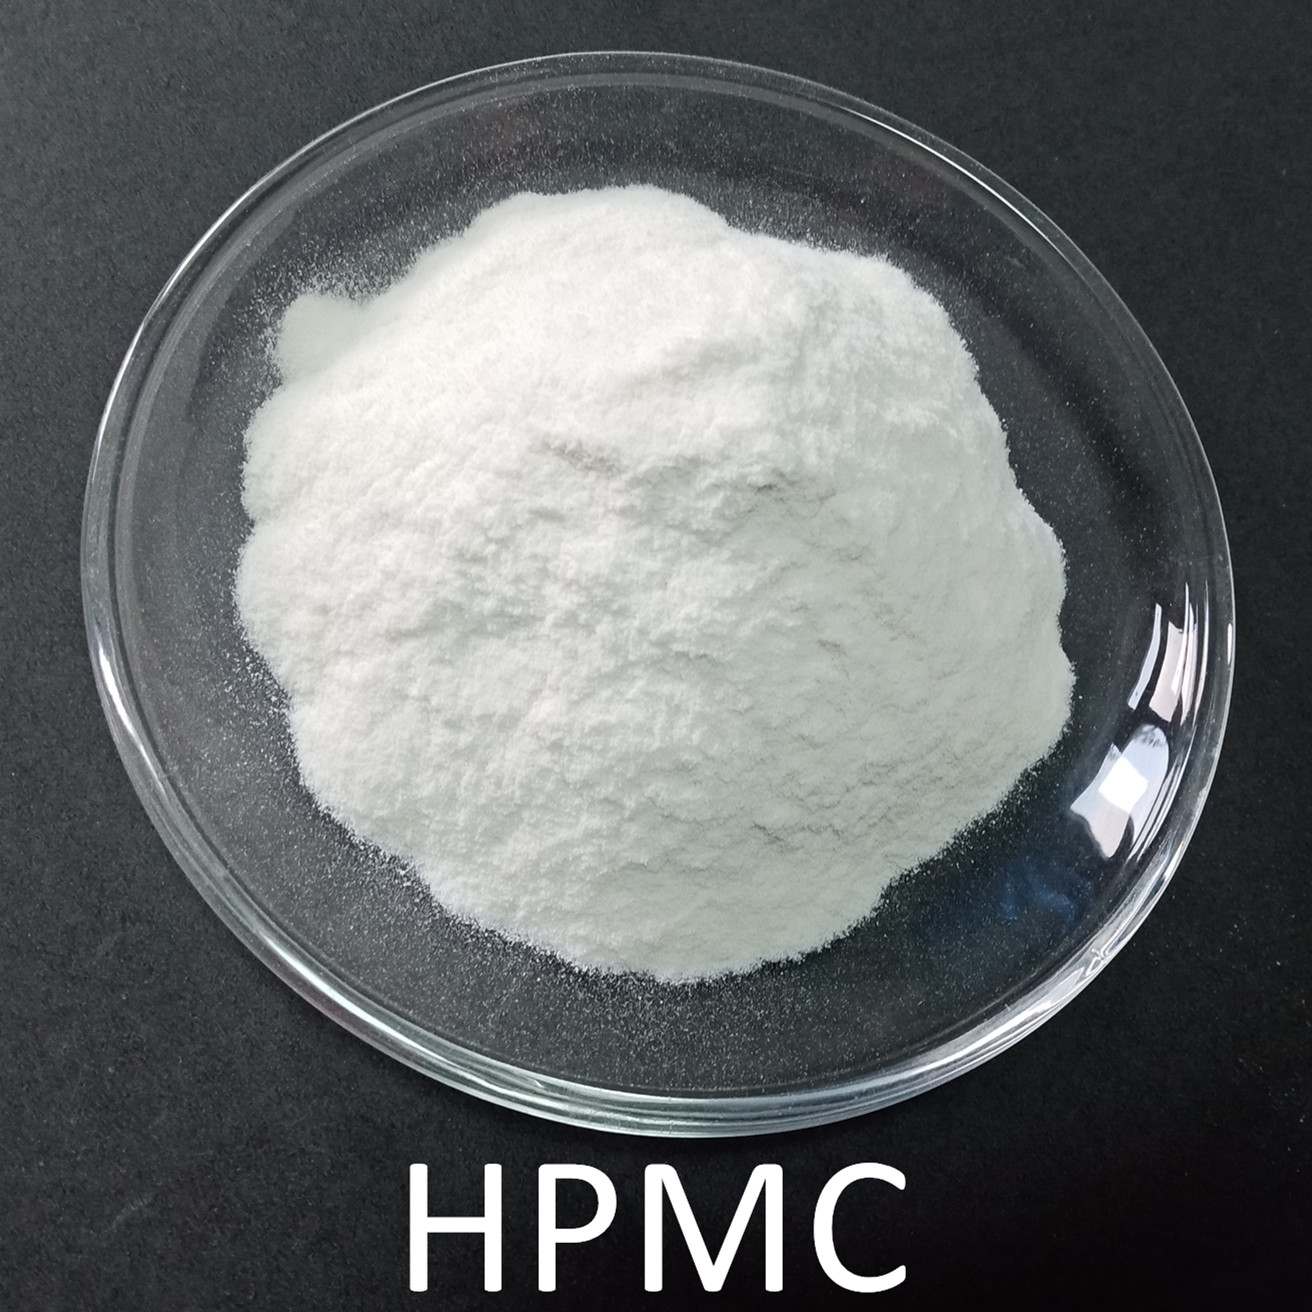 تصویر ویژه HPMC Hydroxypropyl Methylcellulose